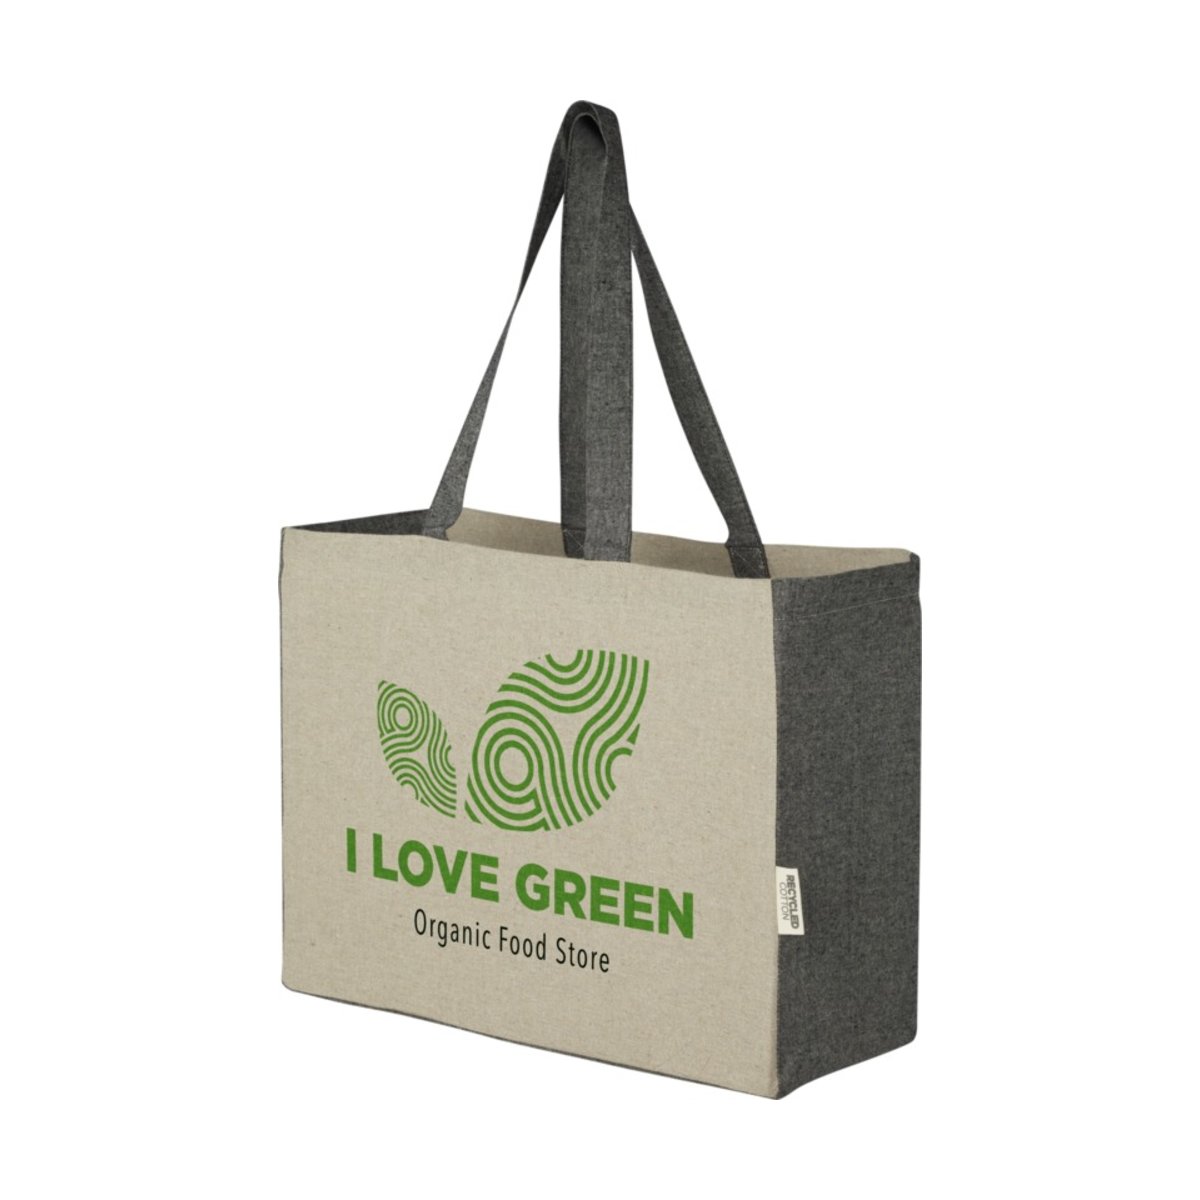 Pheebs torba na zakupy z płaskim dnem o pojemności 18 l z bawełny z recyklingu o gramaturze 190 g/m² i kontrastującymi bokami